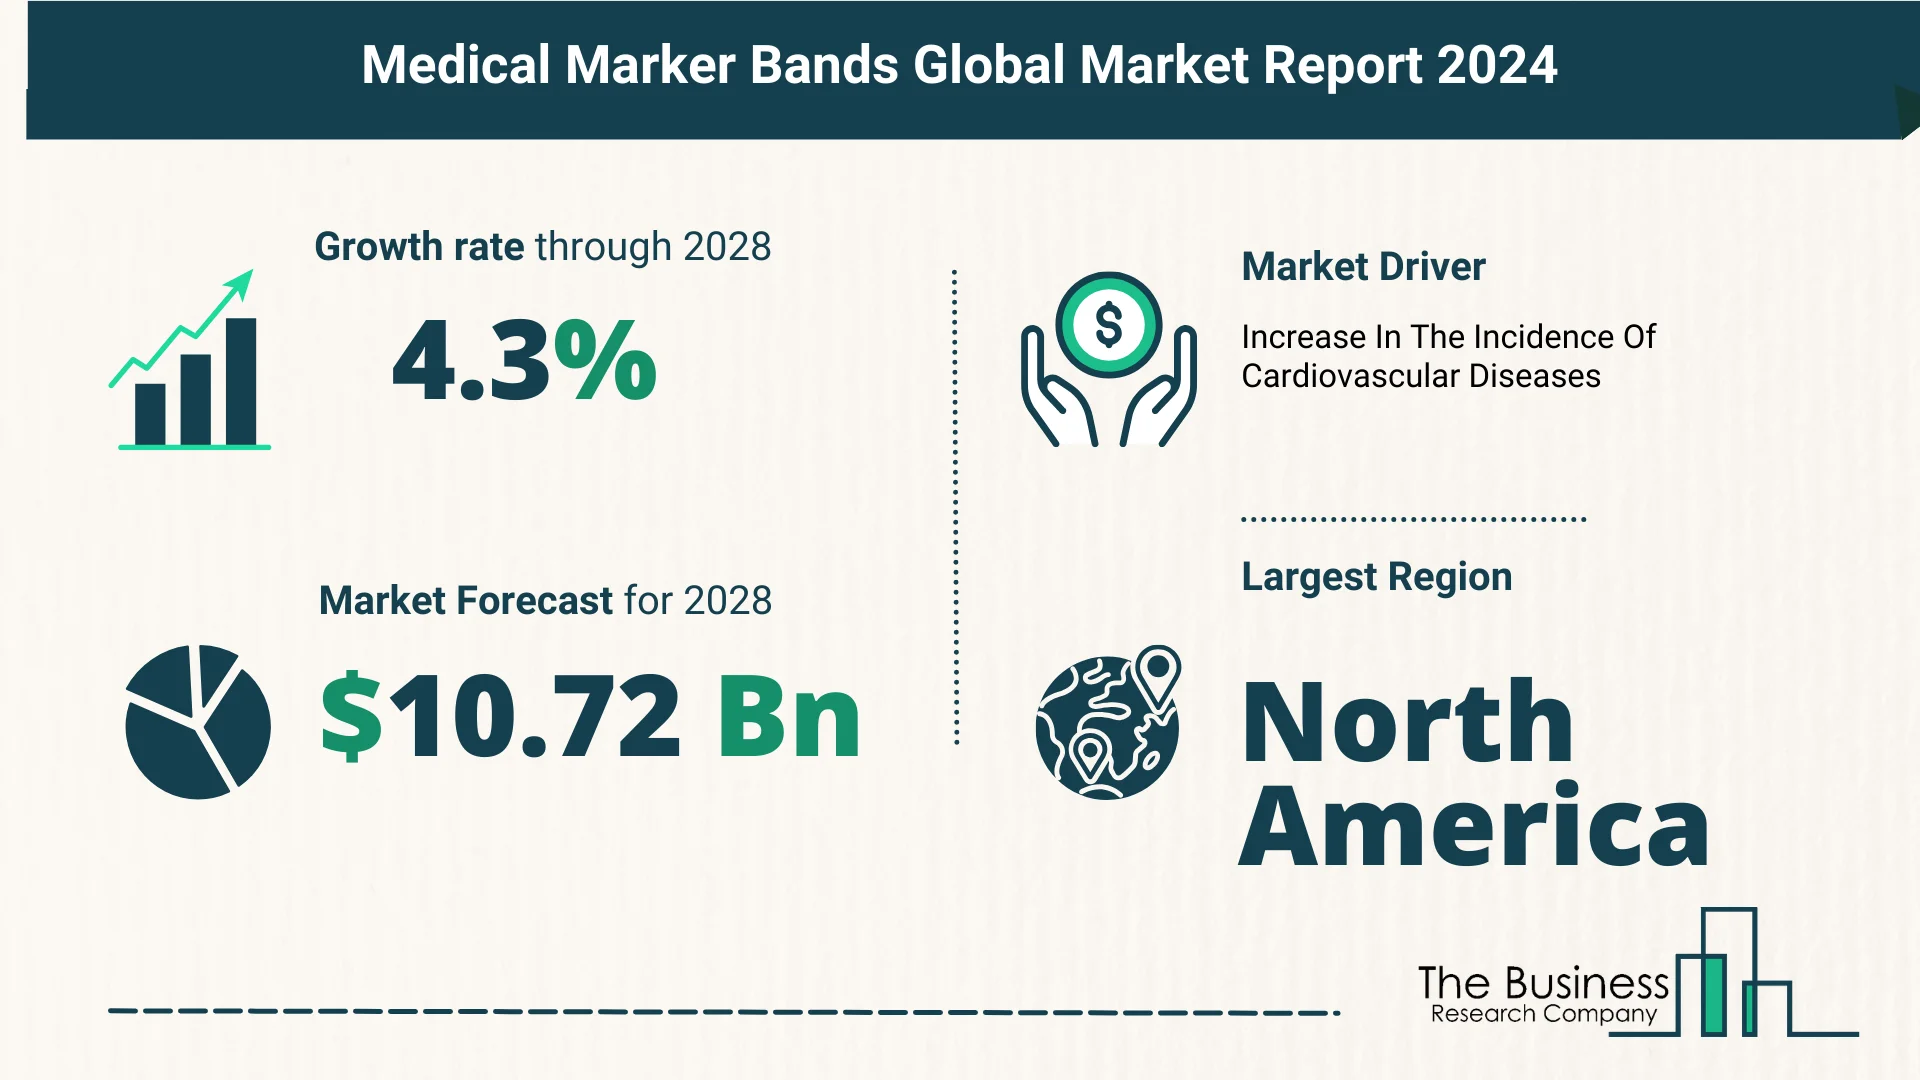 Global Medical Marker Bands Market Report